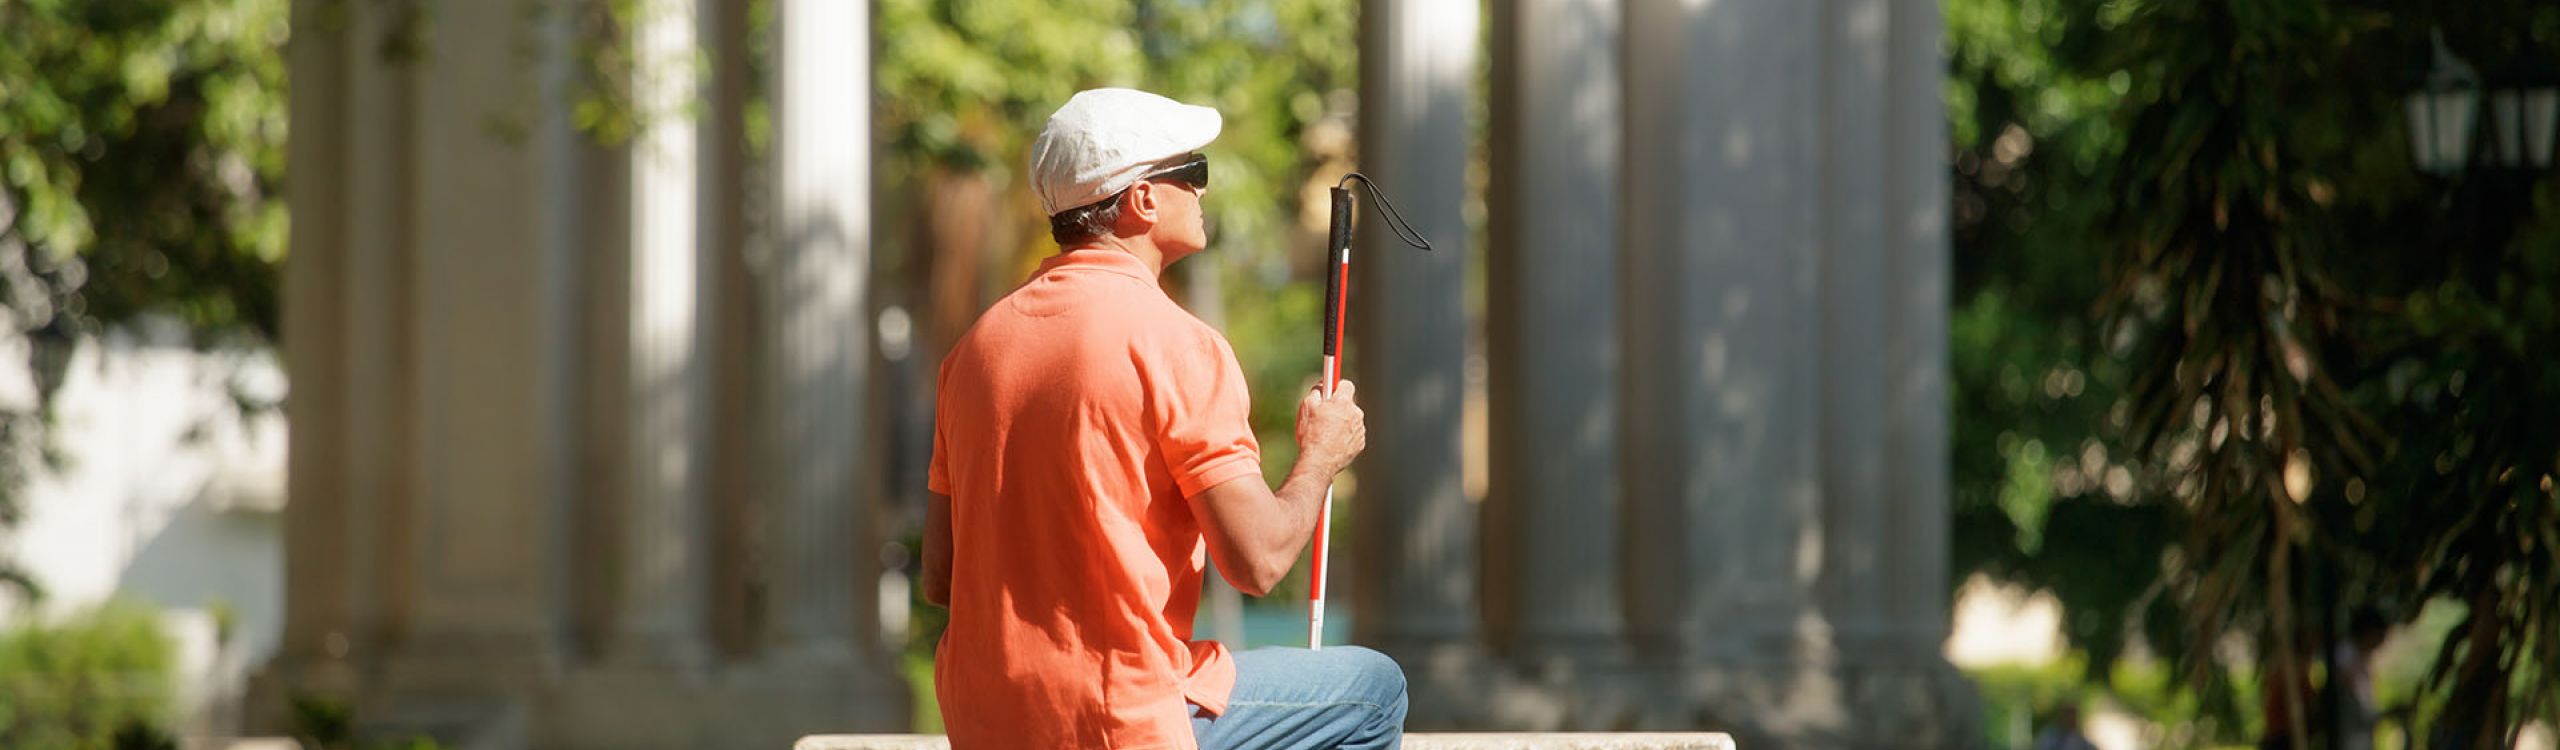 Ein blinder Mann mit Bluejeans, rotem Polo-Shirt und weißer Mütze sitzt mit seinem Langstock auf einer Bank aus Stein.